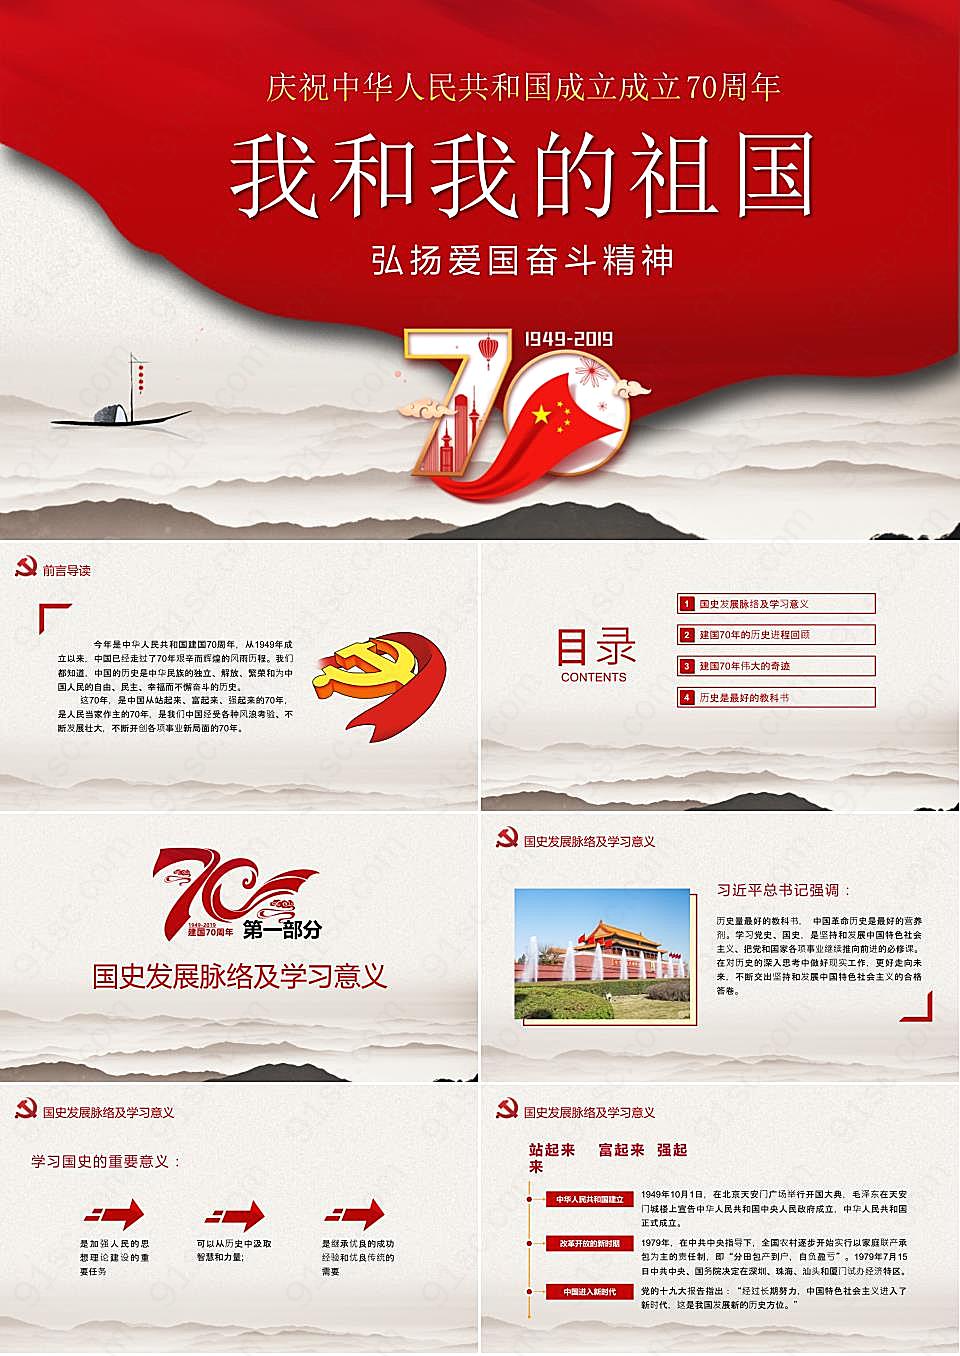 《我和我的祖国》庆祝中华人民共和国成立成立70周年国庆节节日庆典